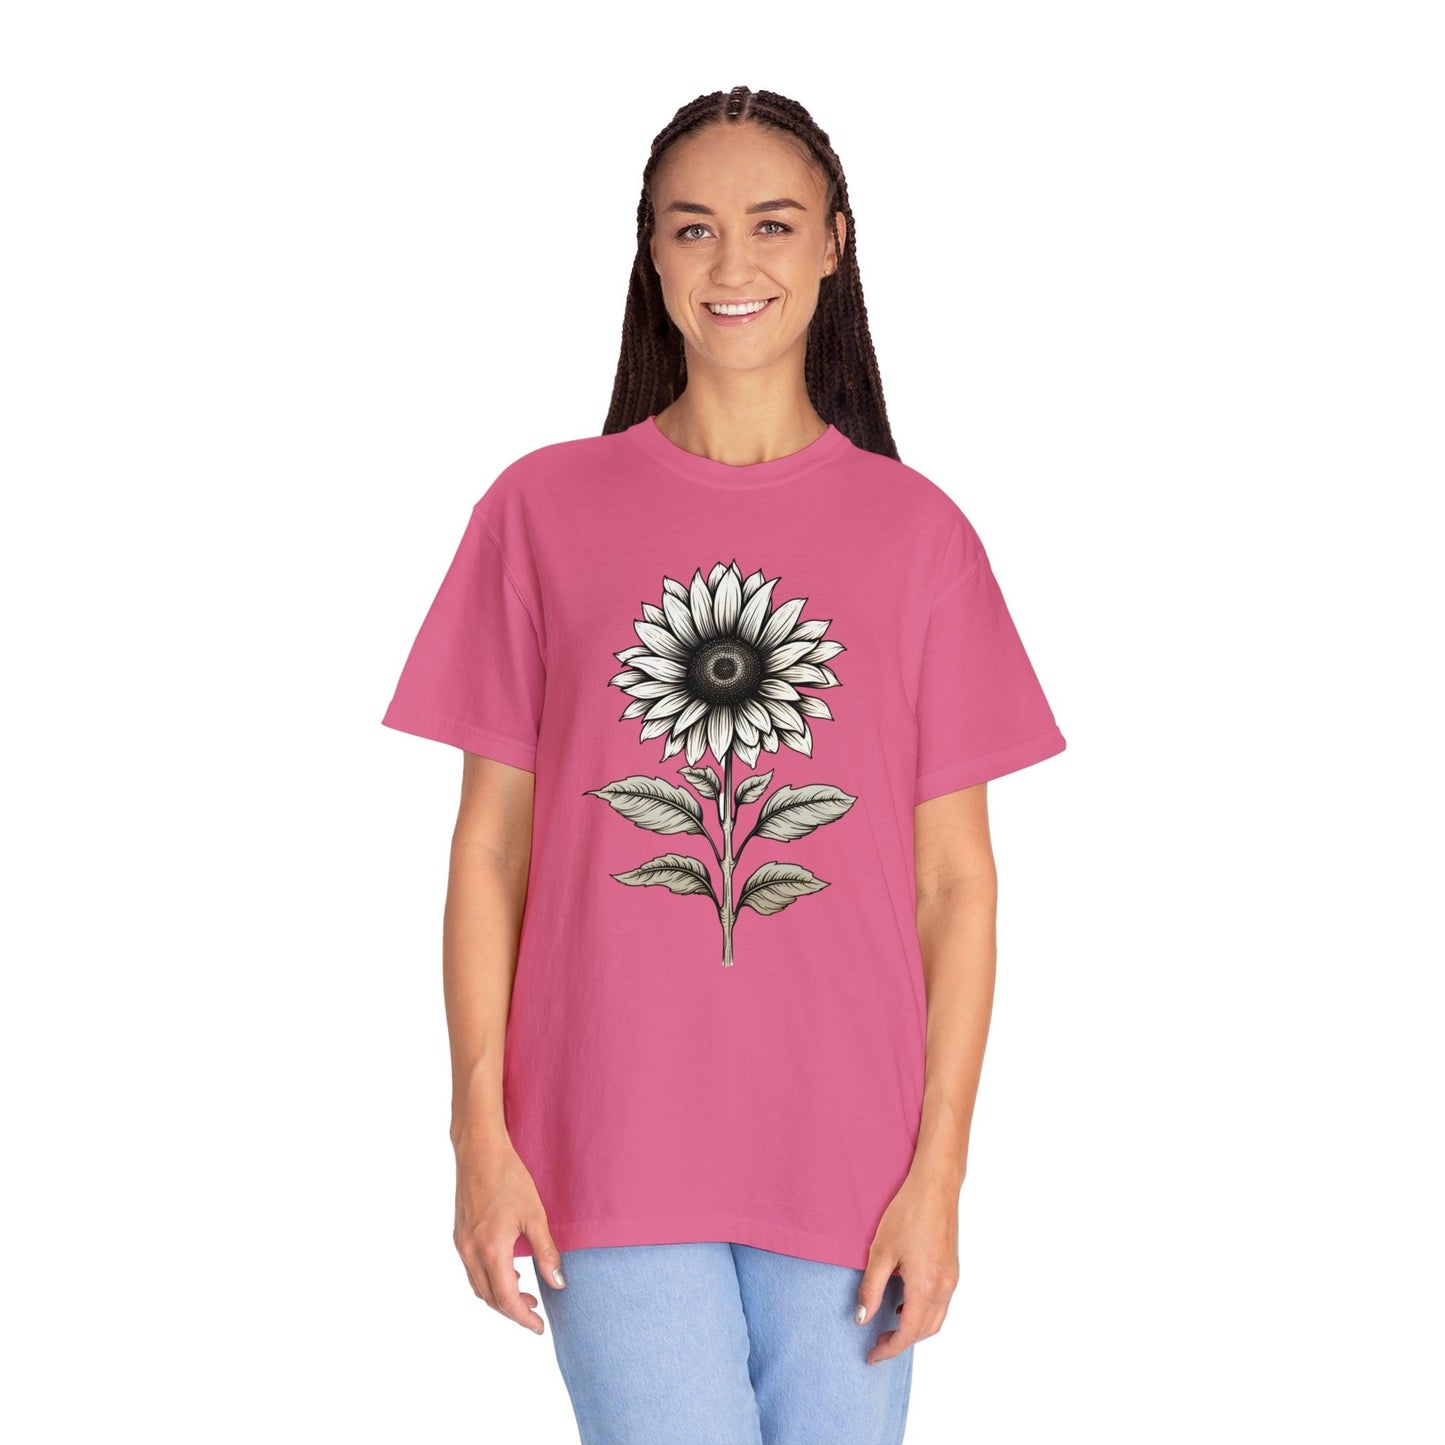 Sunflower Shirt Flower Shirt Aesthetic, Floral Graphic Tee Floral Shirt Flower T-shirt, Gift For Her Women Wildflower Shirt